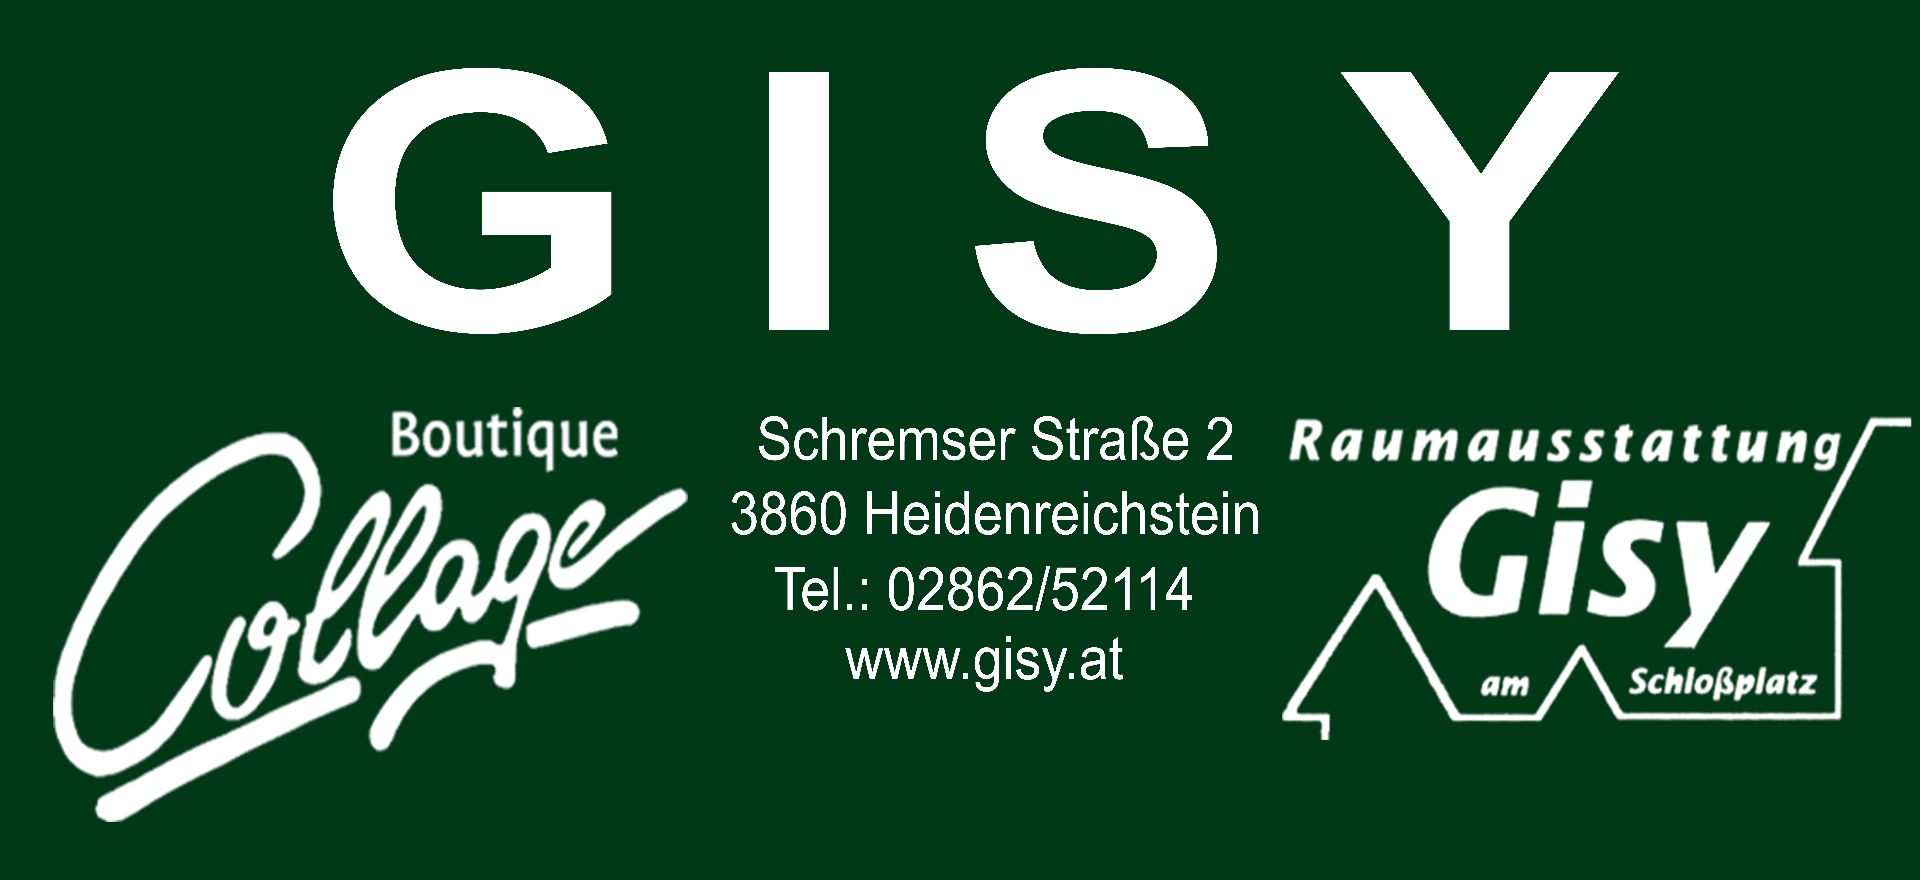 GISY-Raumausstattung & Mode